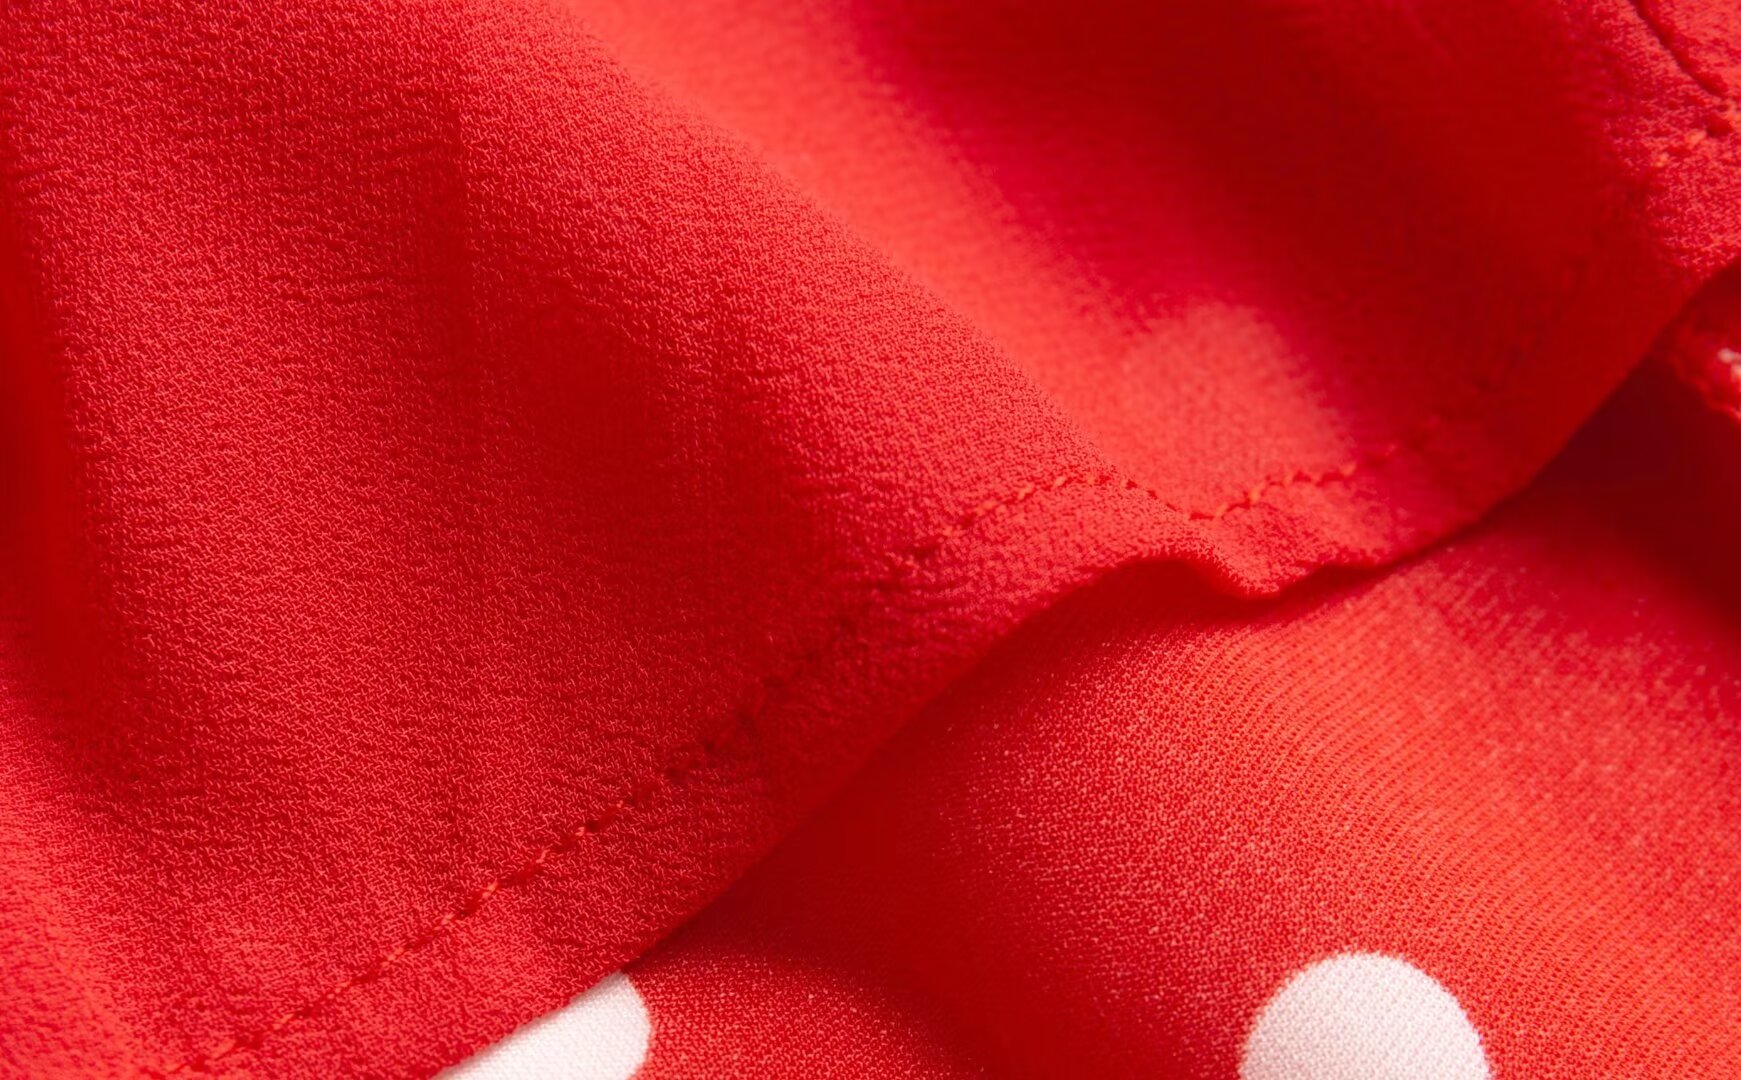 Red Retro Contrast Color Polka Dot Split Midi Skirt